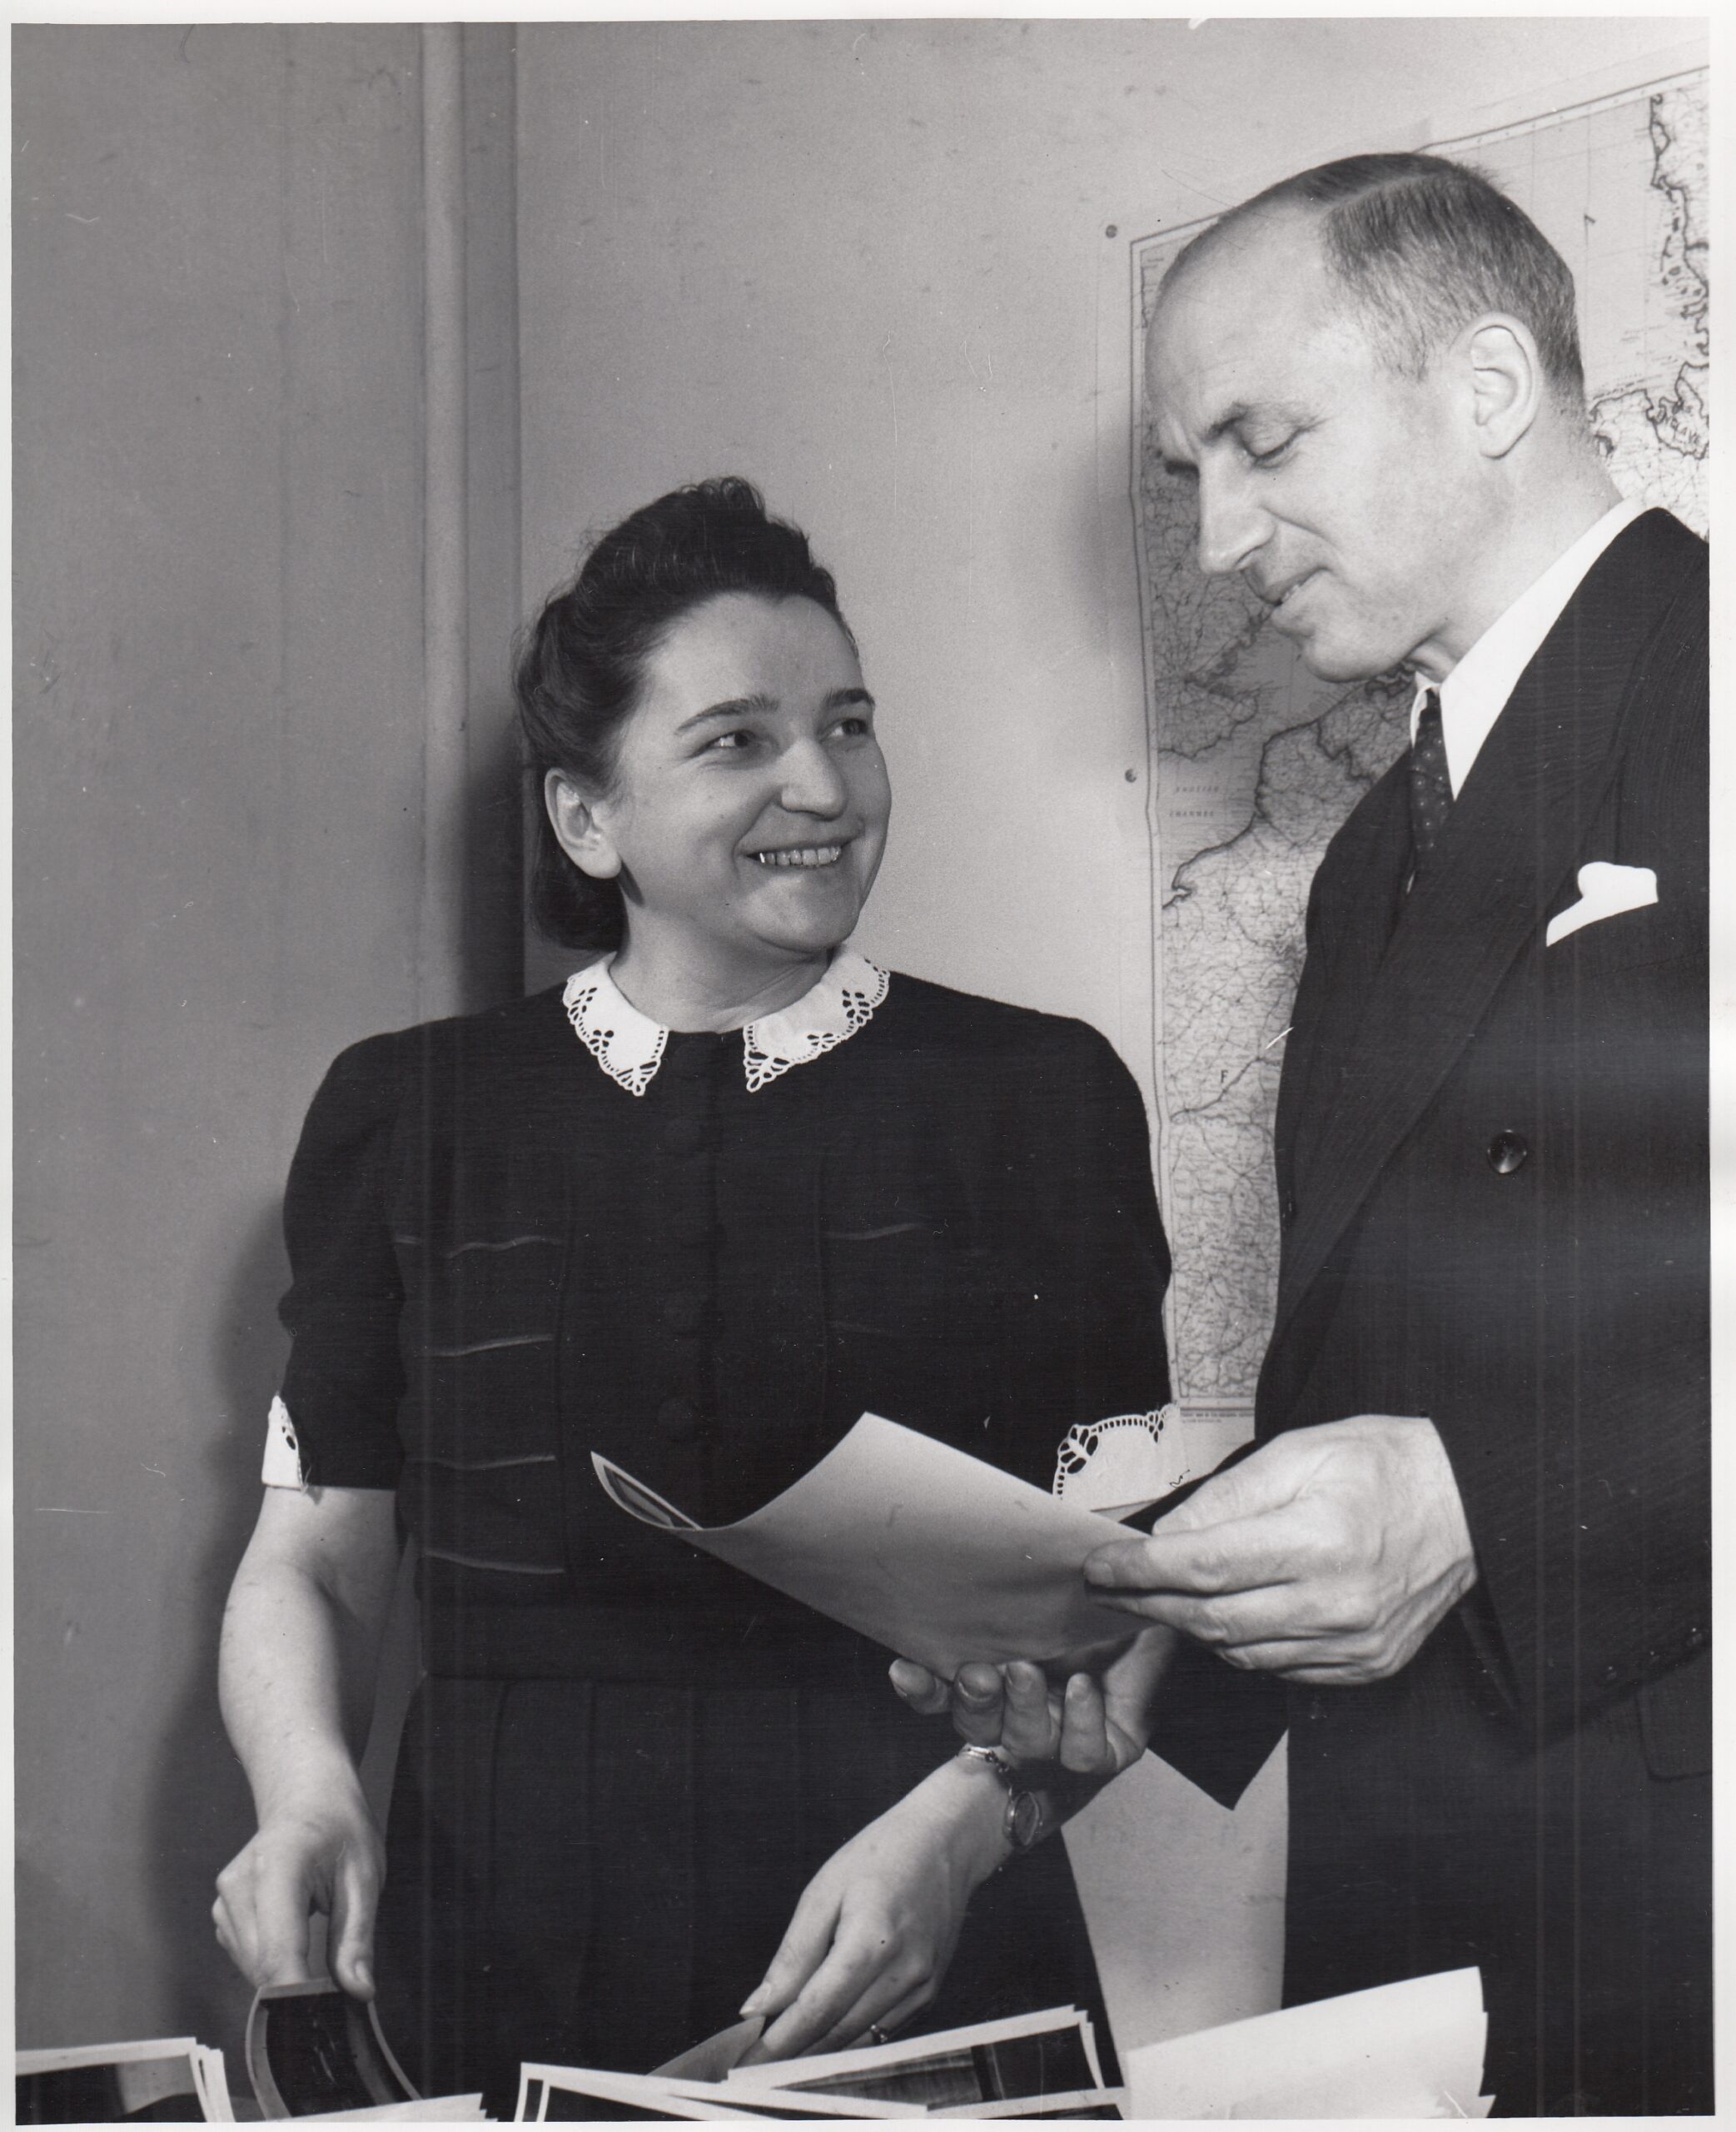 Image of Zofia Mączka witness at Nuremberg Medical Trial with Dr. Stanislow Piotrowsky